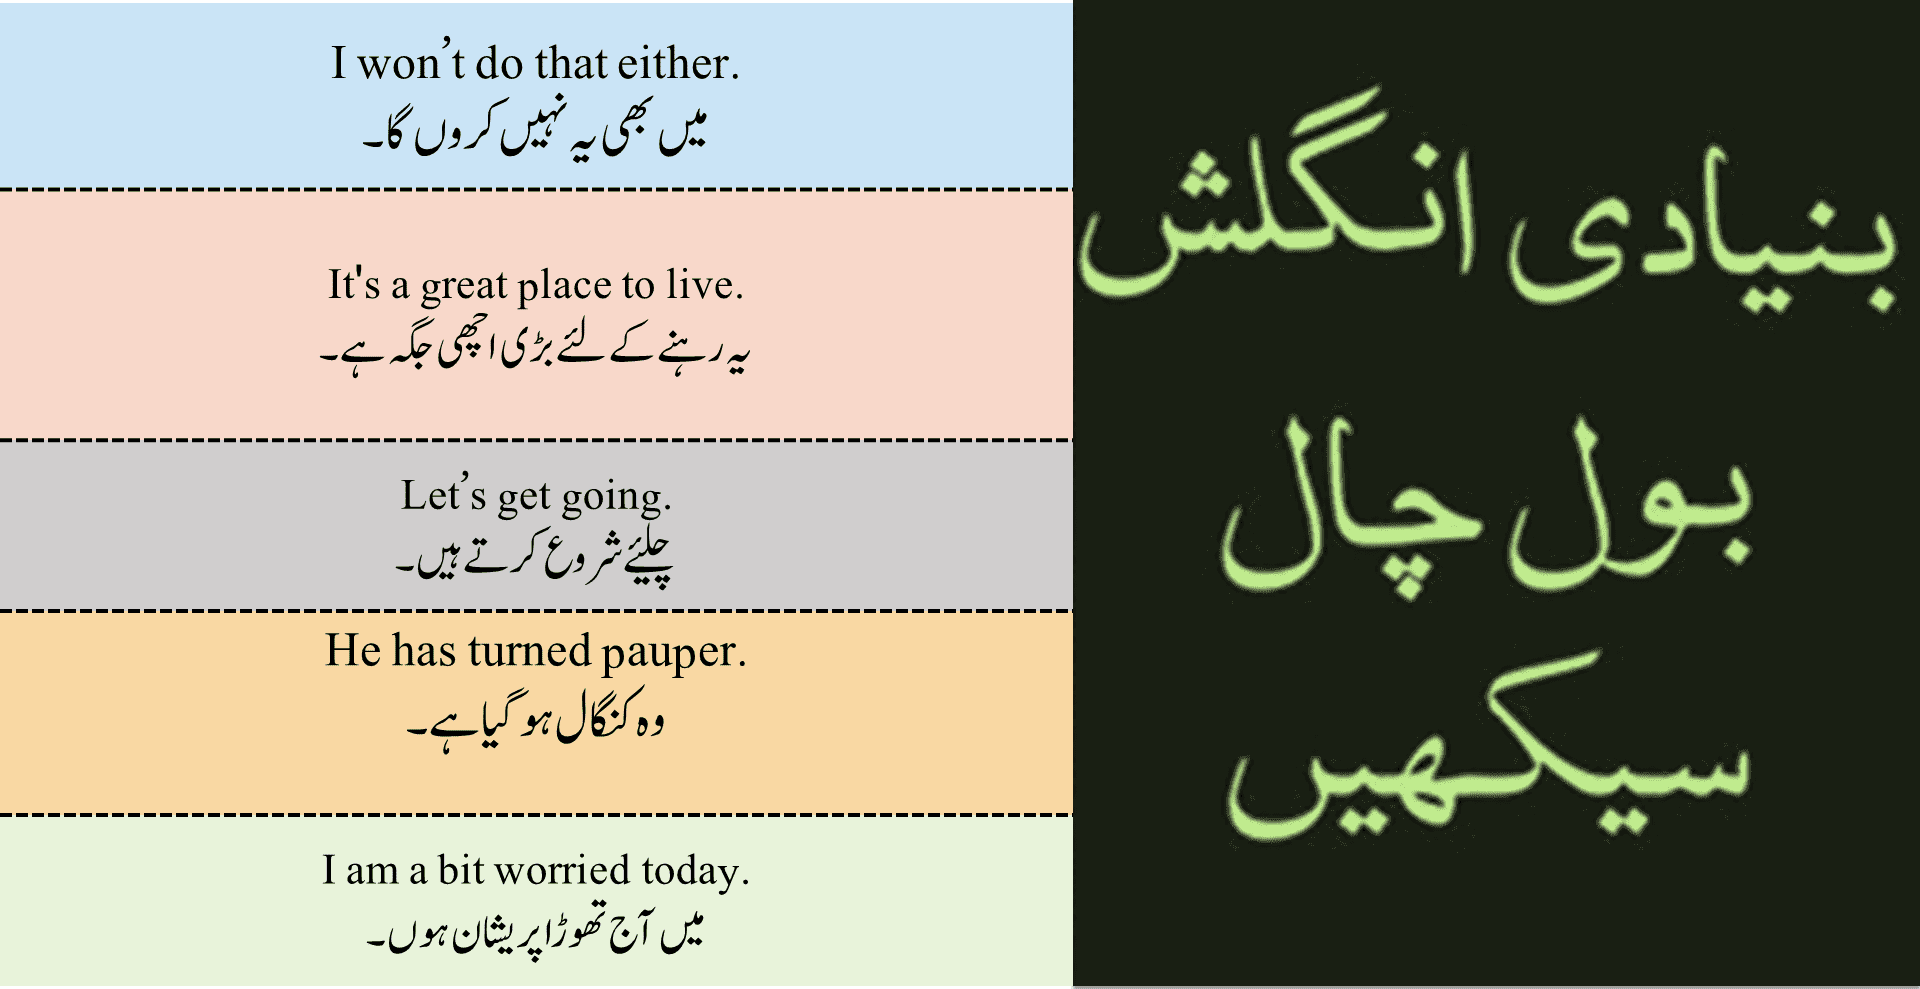 my daily routine essay in urdu